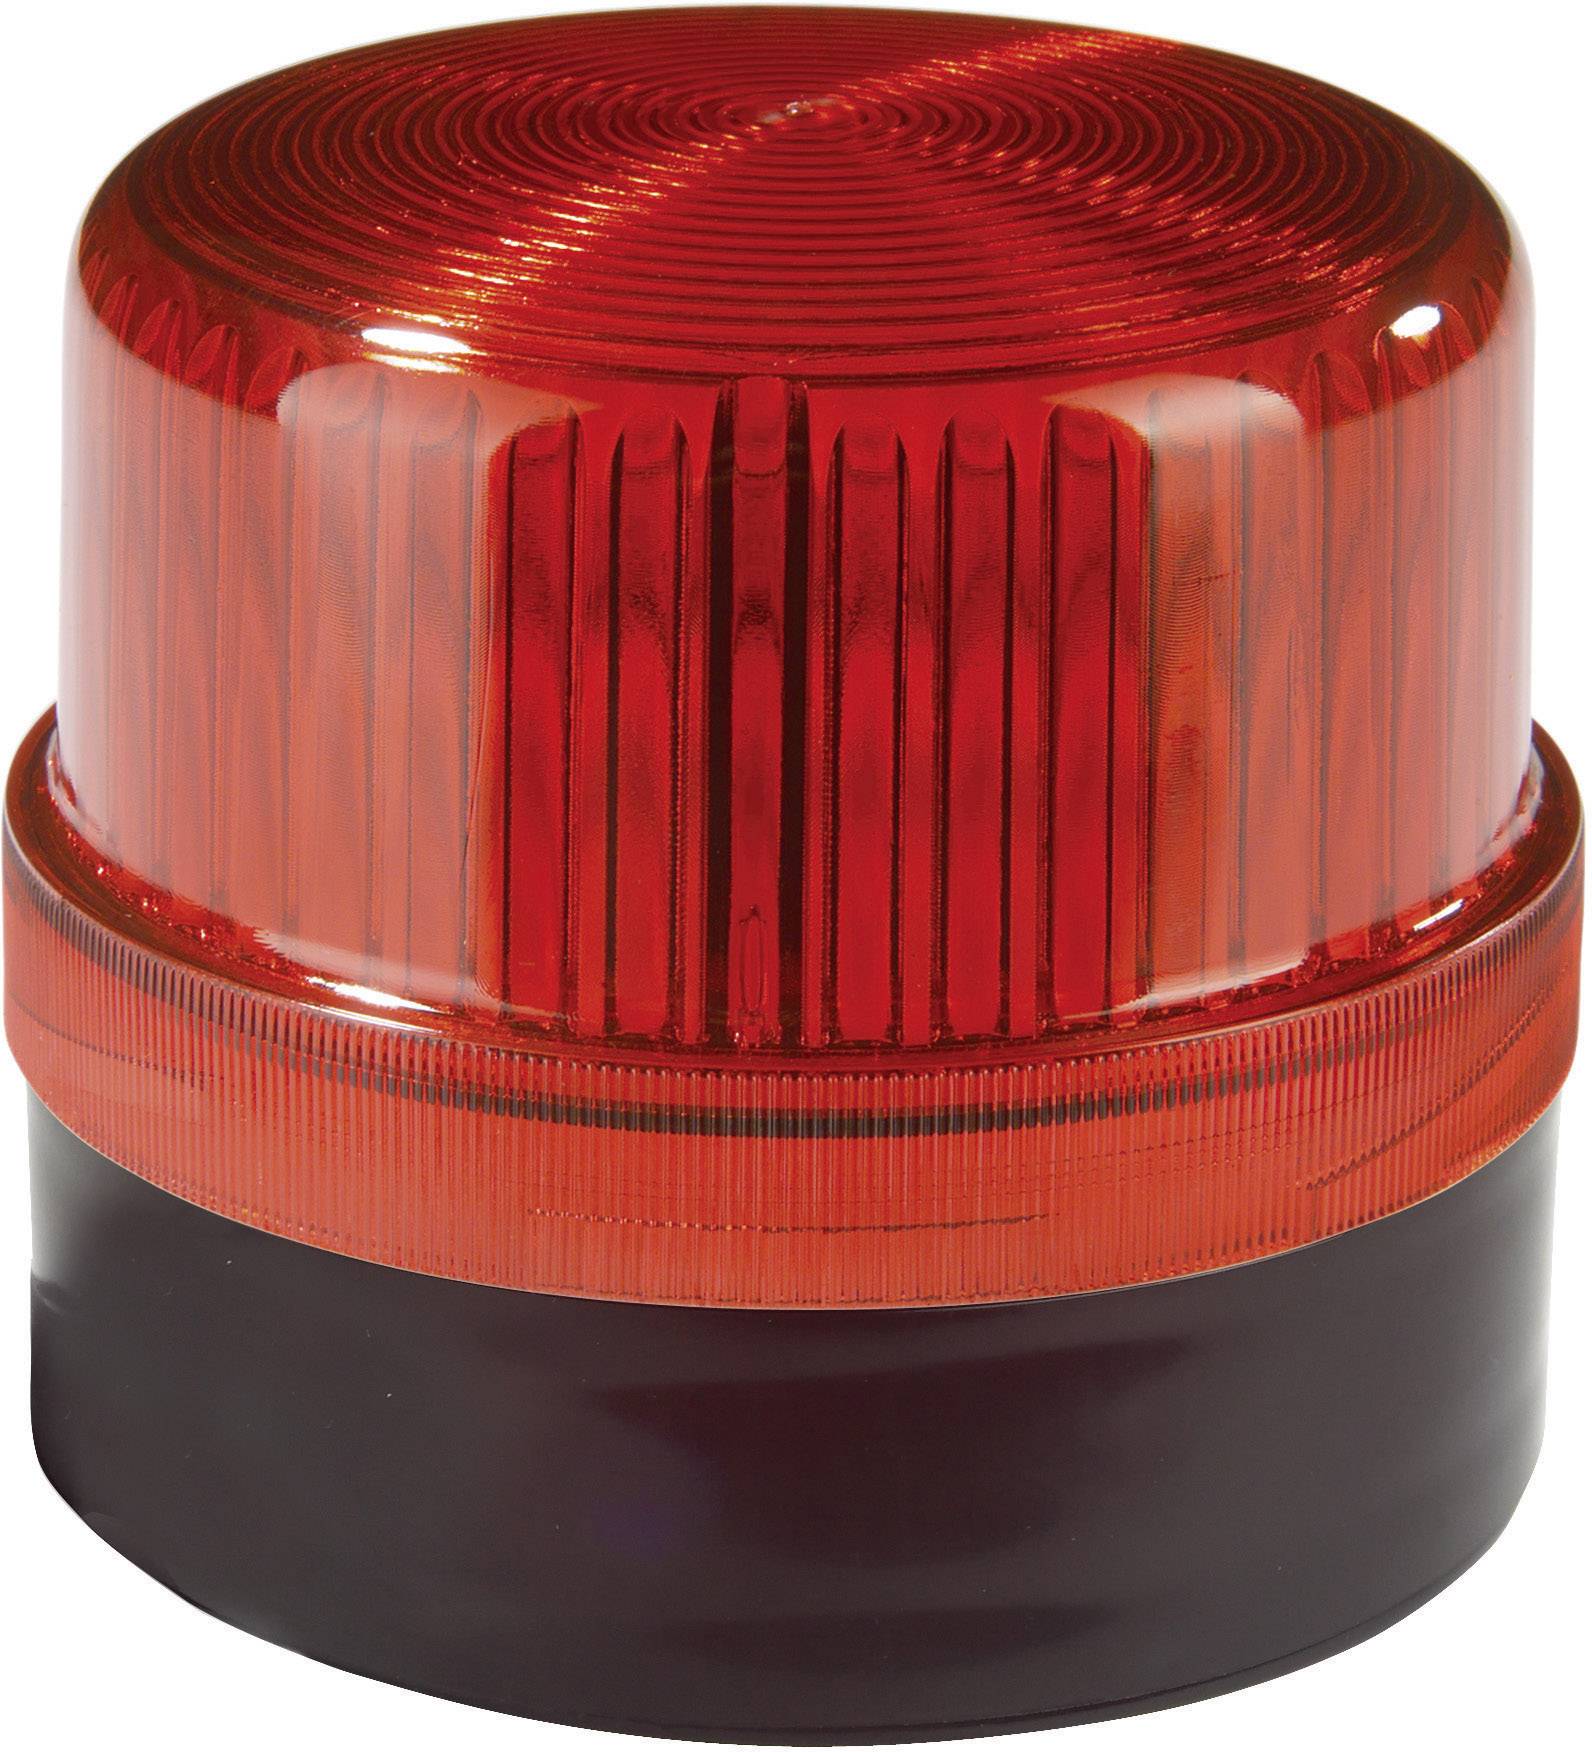 AUER SIGNAL Signalleuchte LED Auer Signalgeräte DLG Rot Rot Dauerlicht 24 V/DC, 24 V/AC